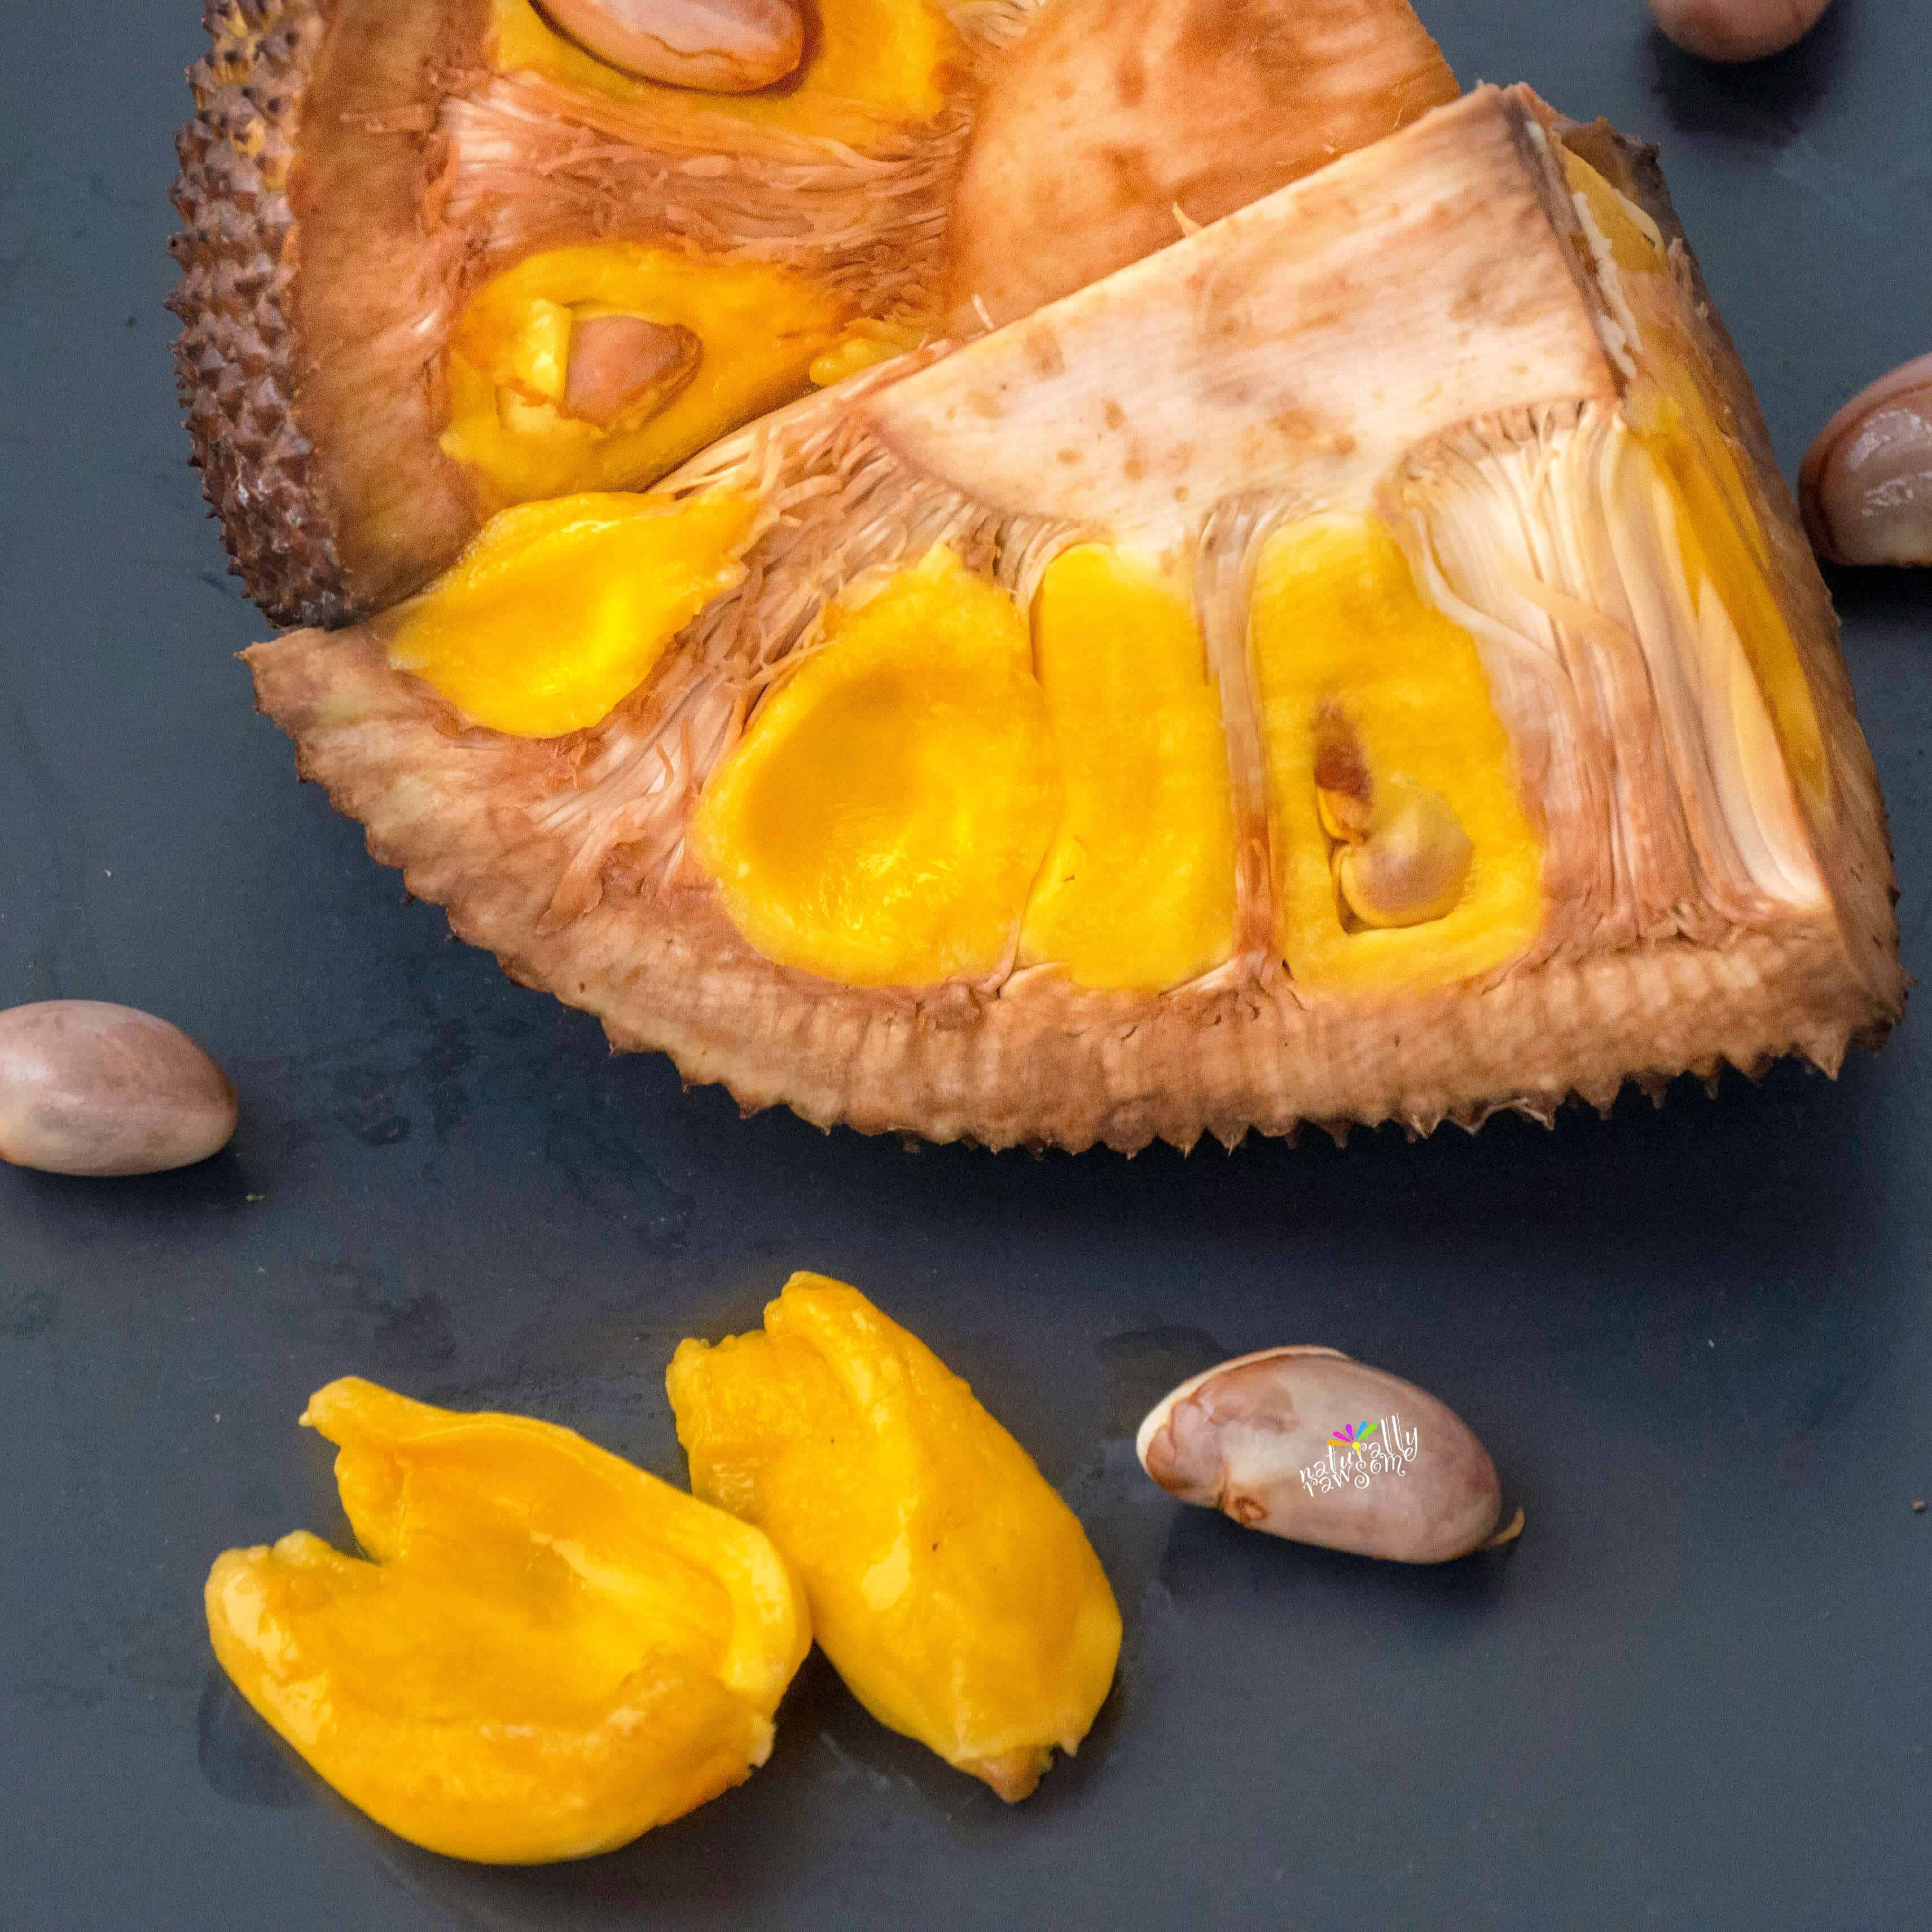 Jackfruit 101 And A Recipe For Kerala Style Jackfruit Stir Fry Paleo Aip Vegan